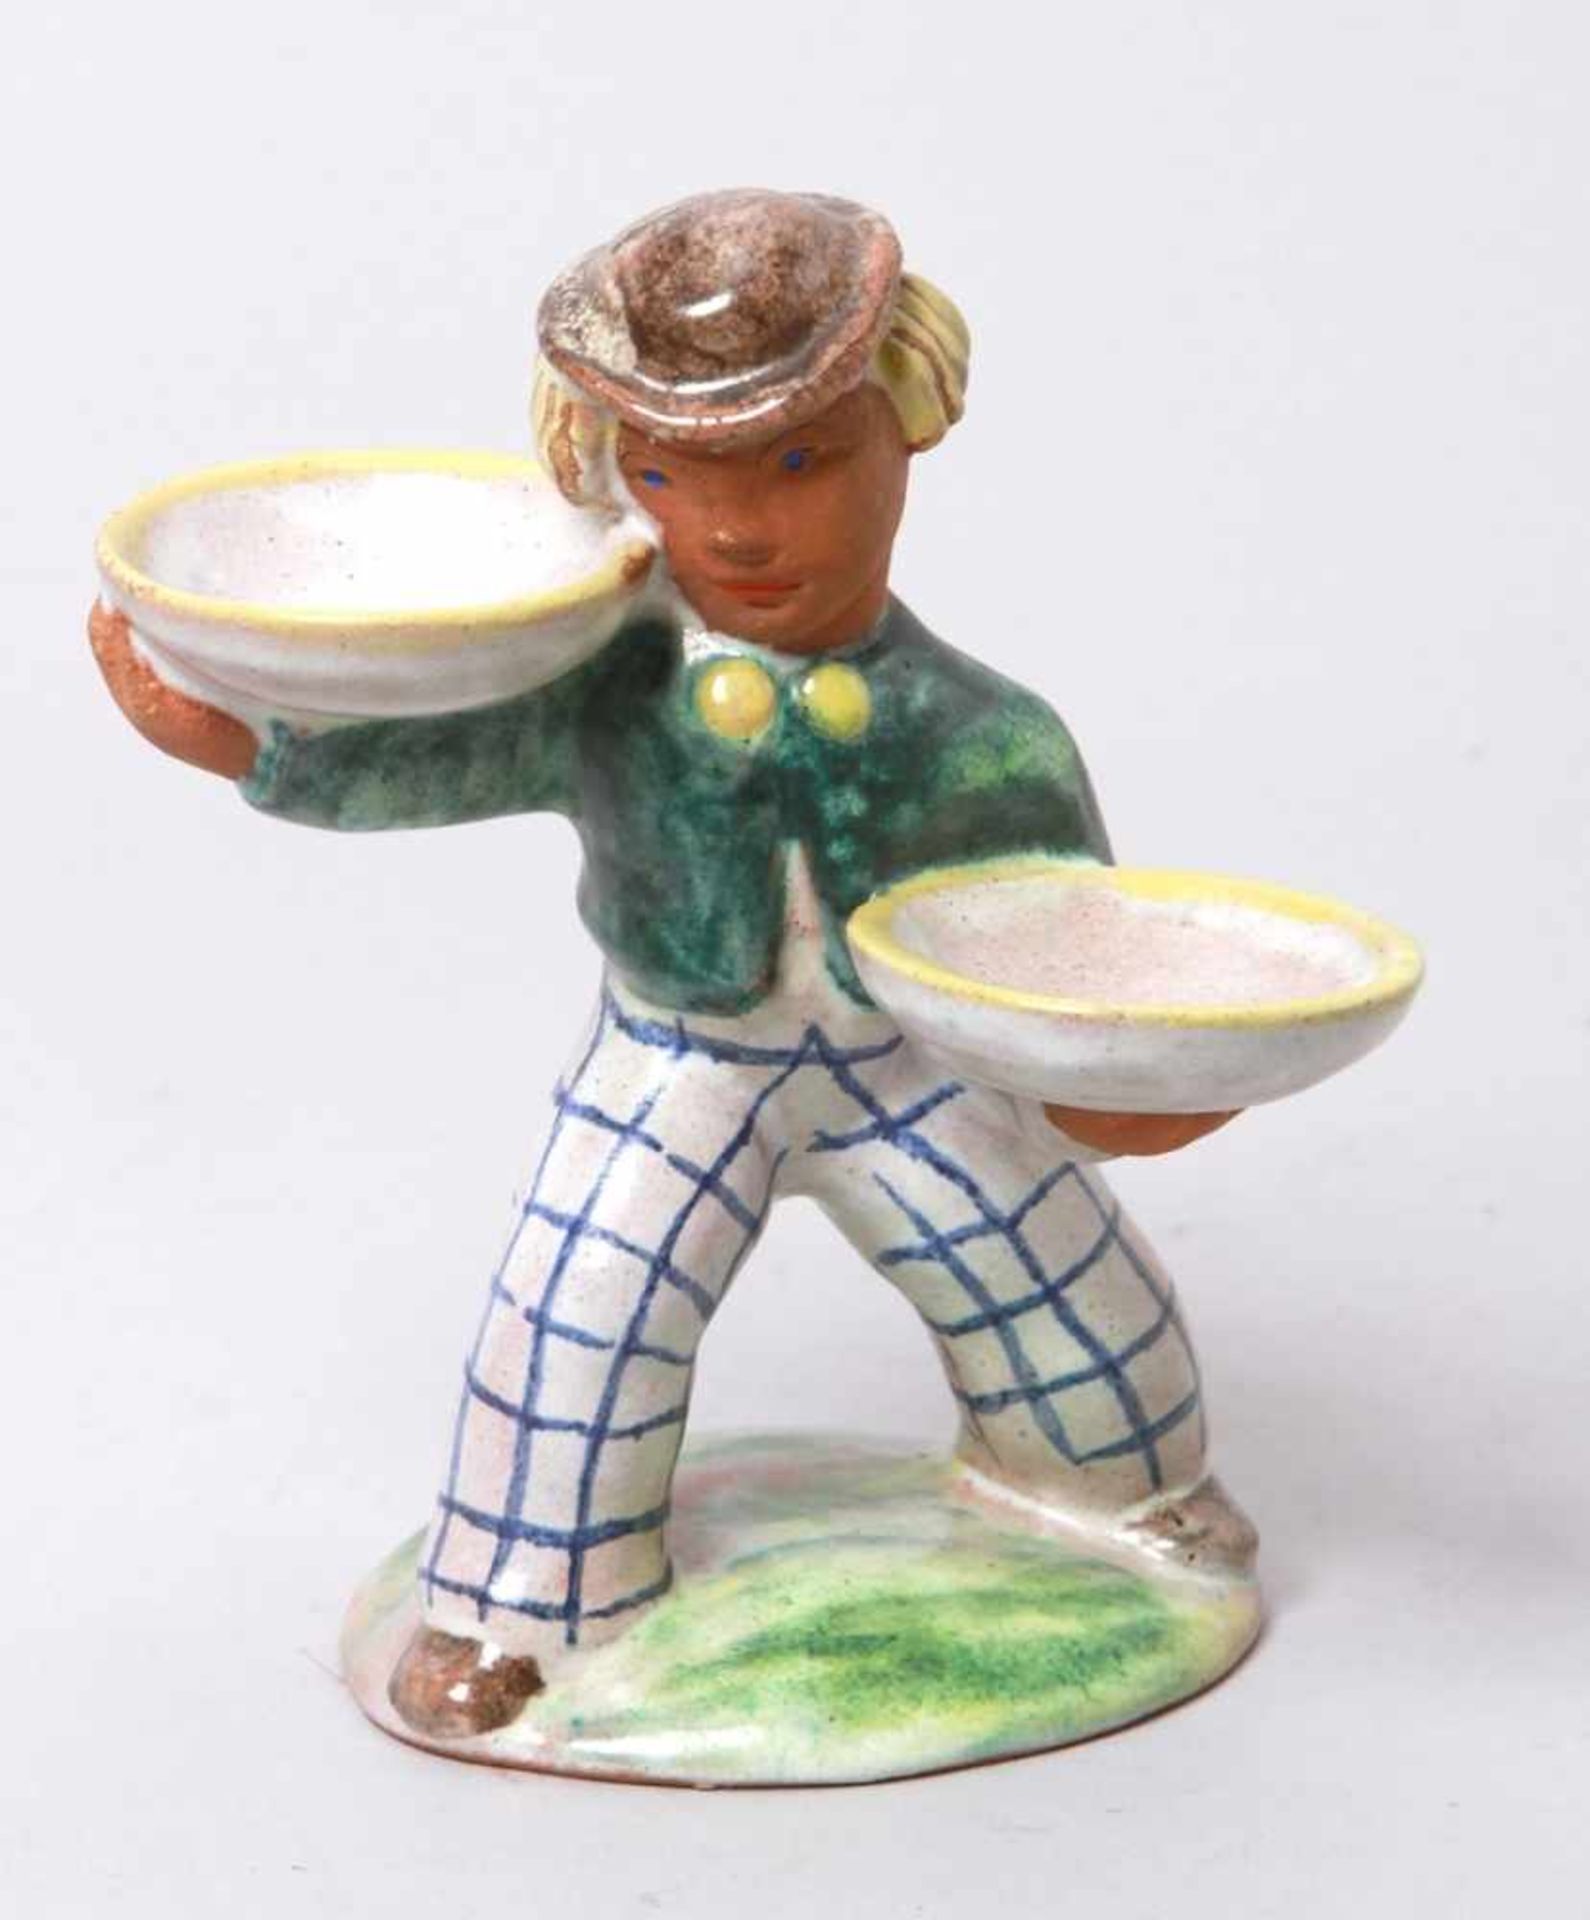 Keramik-Figur, "Schalenträger", Österreich, um 1910-20, auf leicht gewölbter